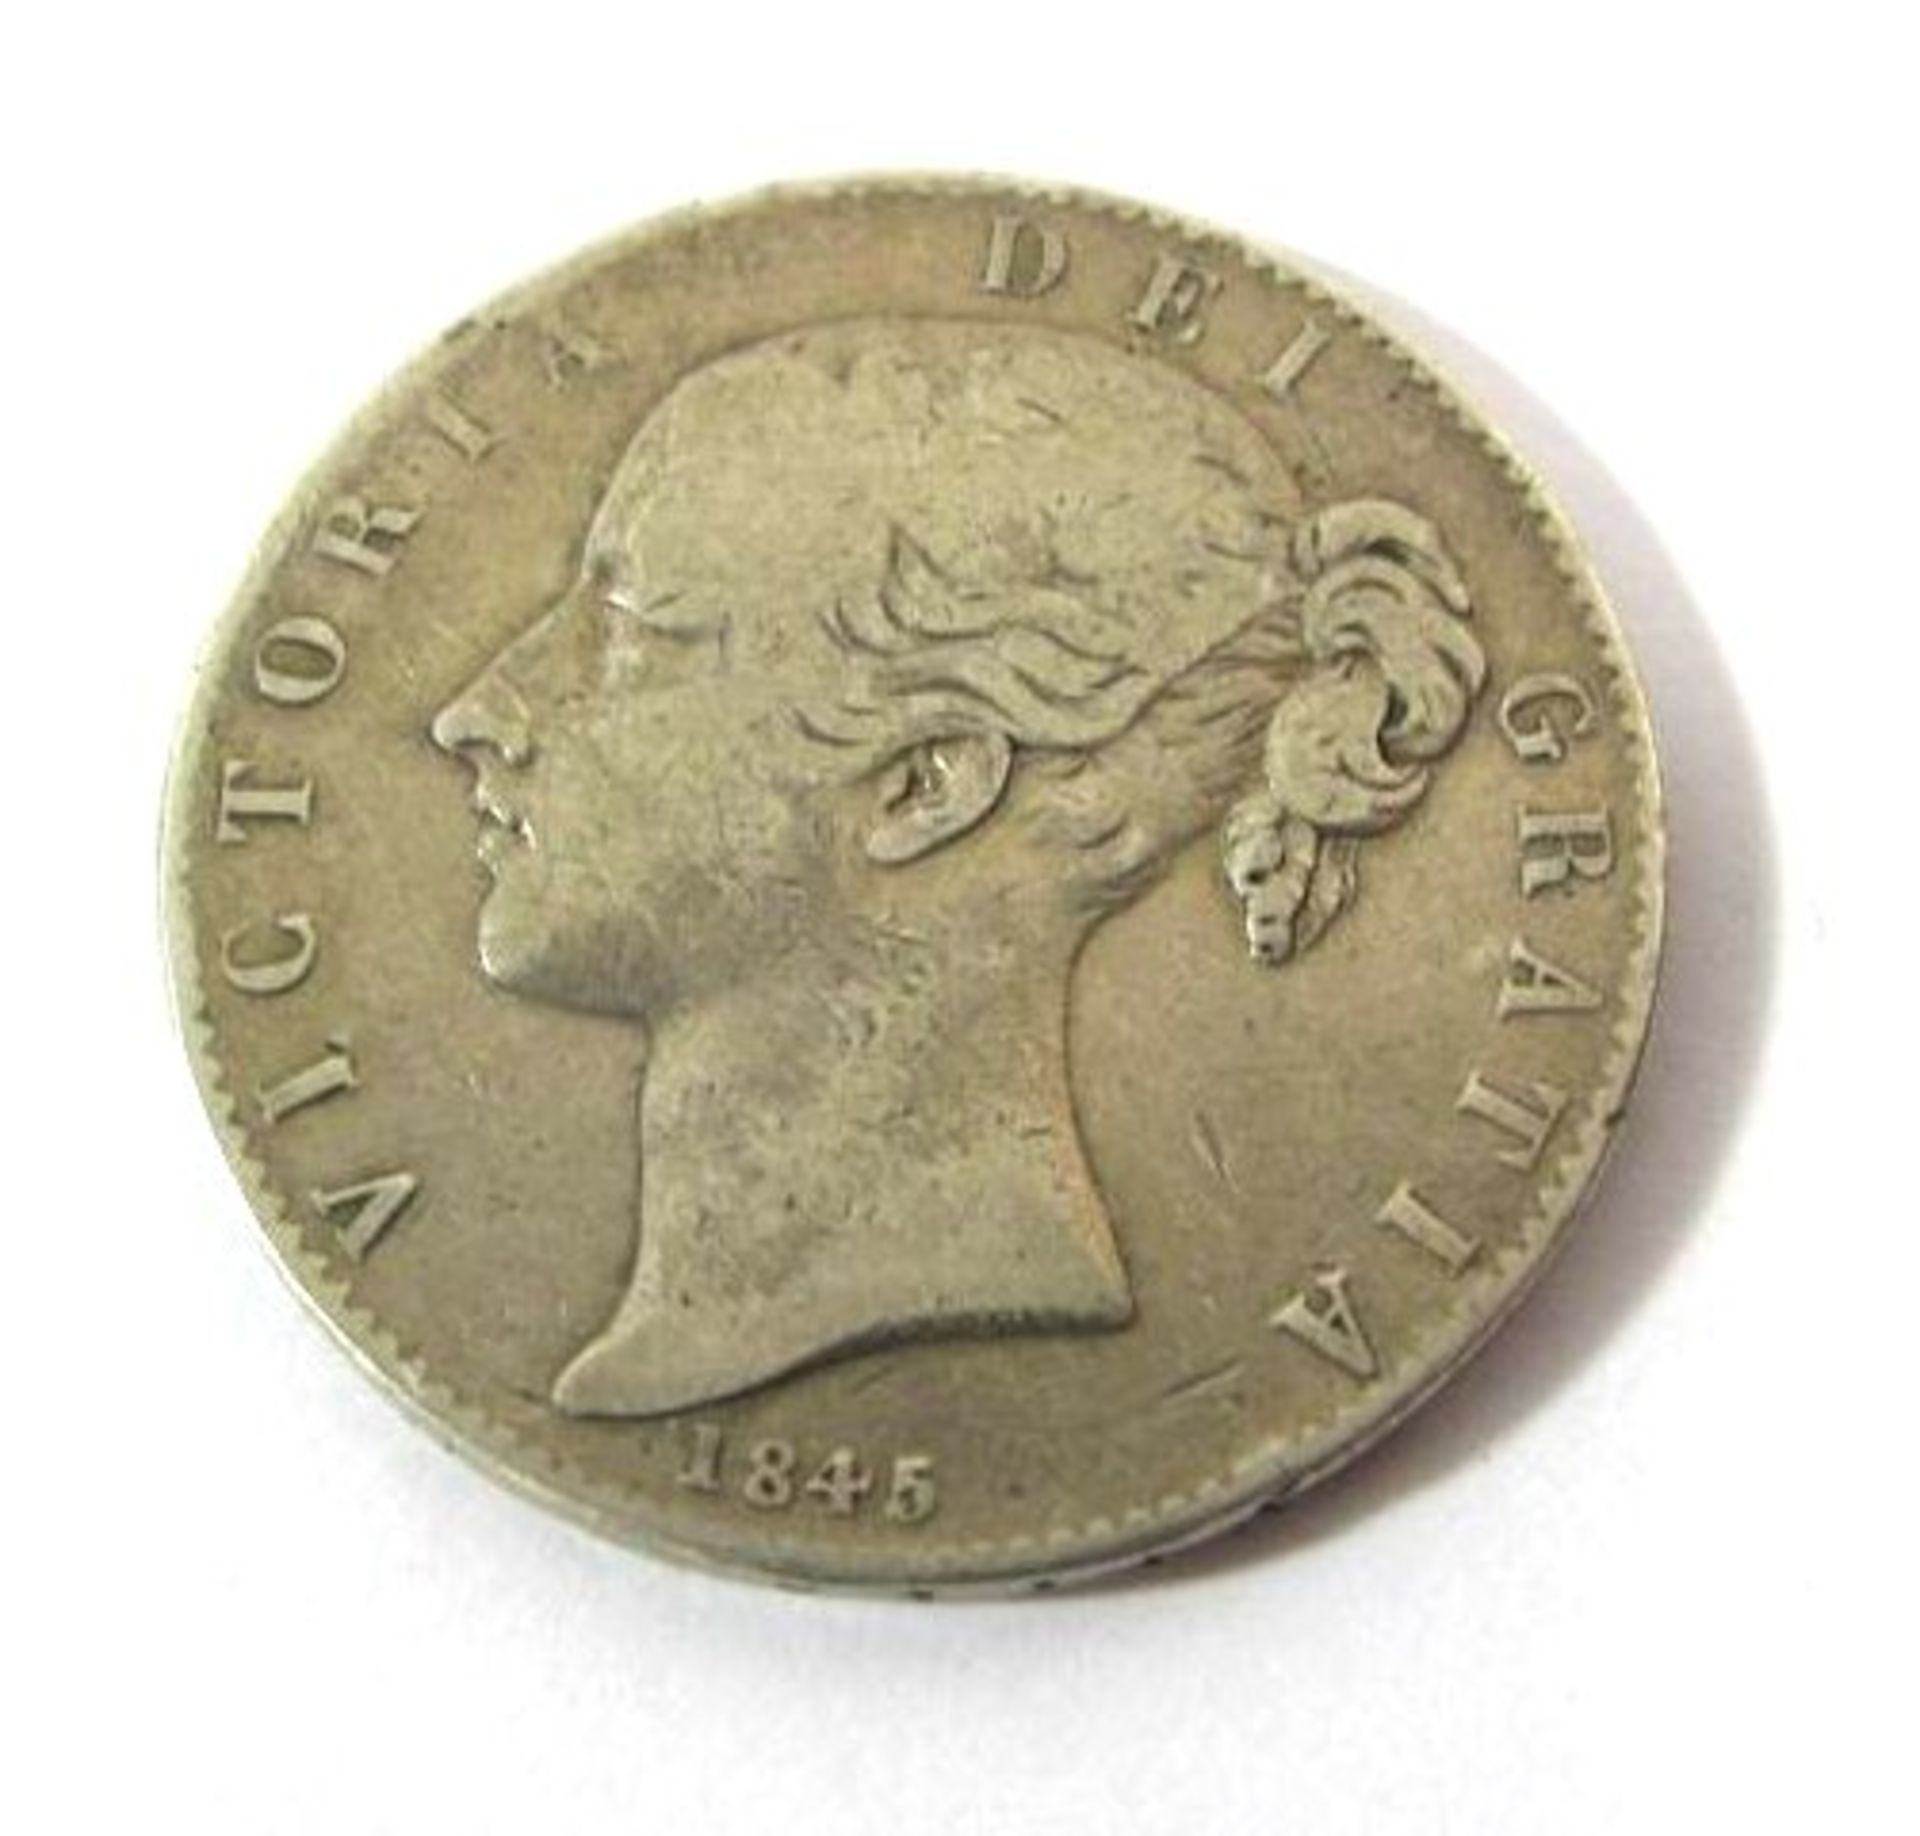 Großbritanien, 1 Crown, Victoria, 1845, 27,6